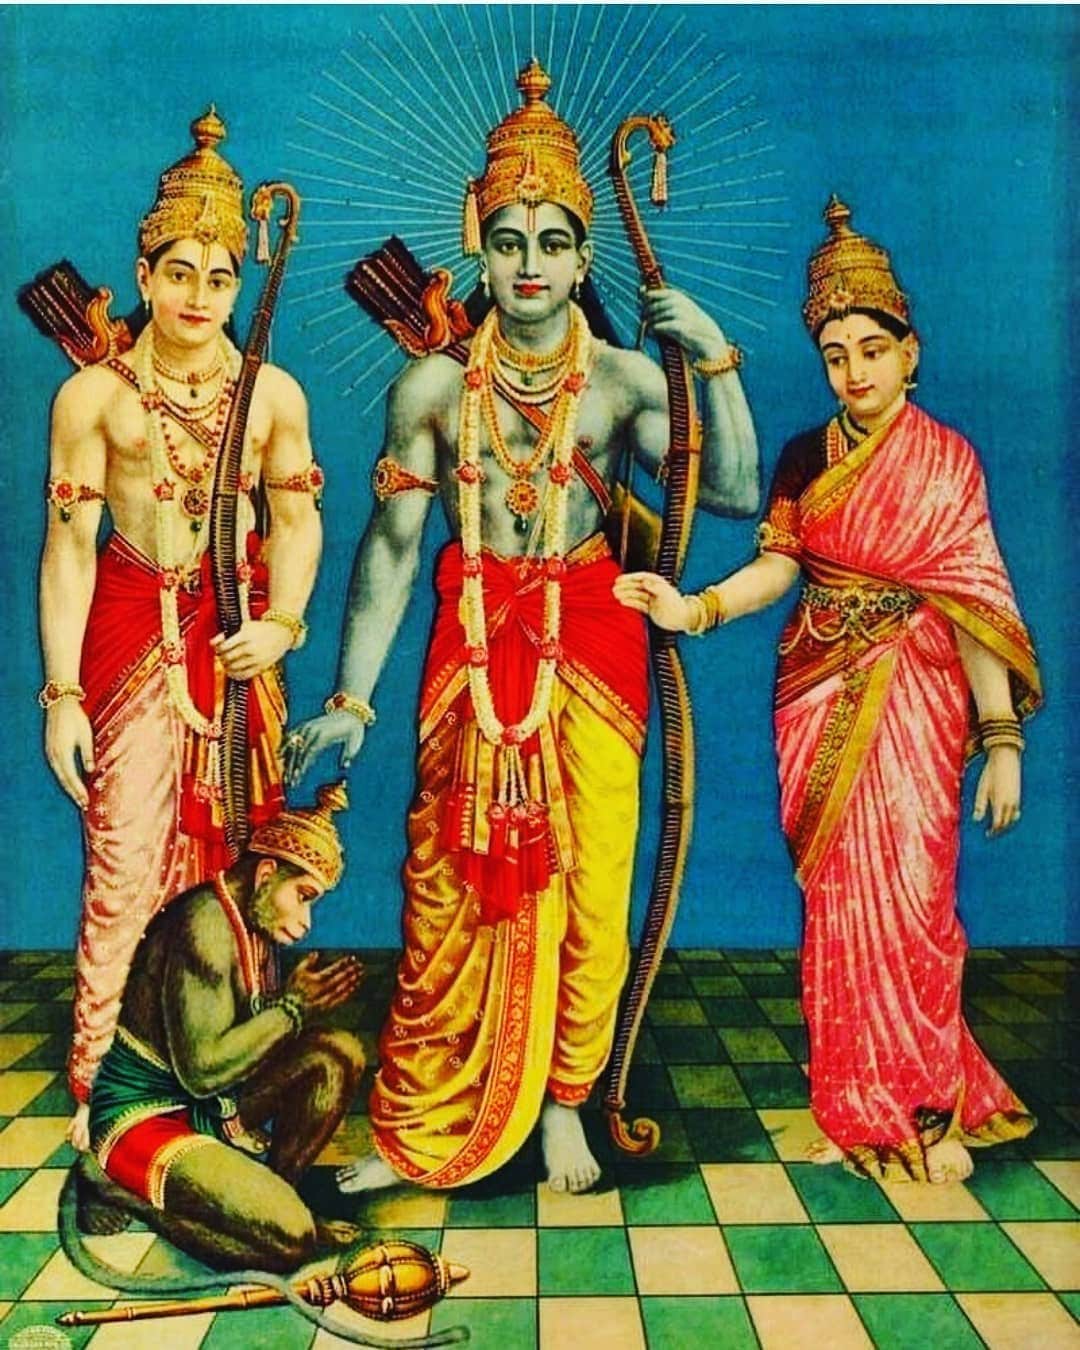 Shri Ram Lakshman Sita Devi and Hanuman by Raja Ravi Varma - Etsy